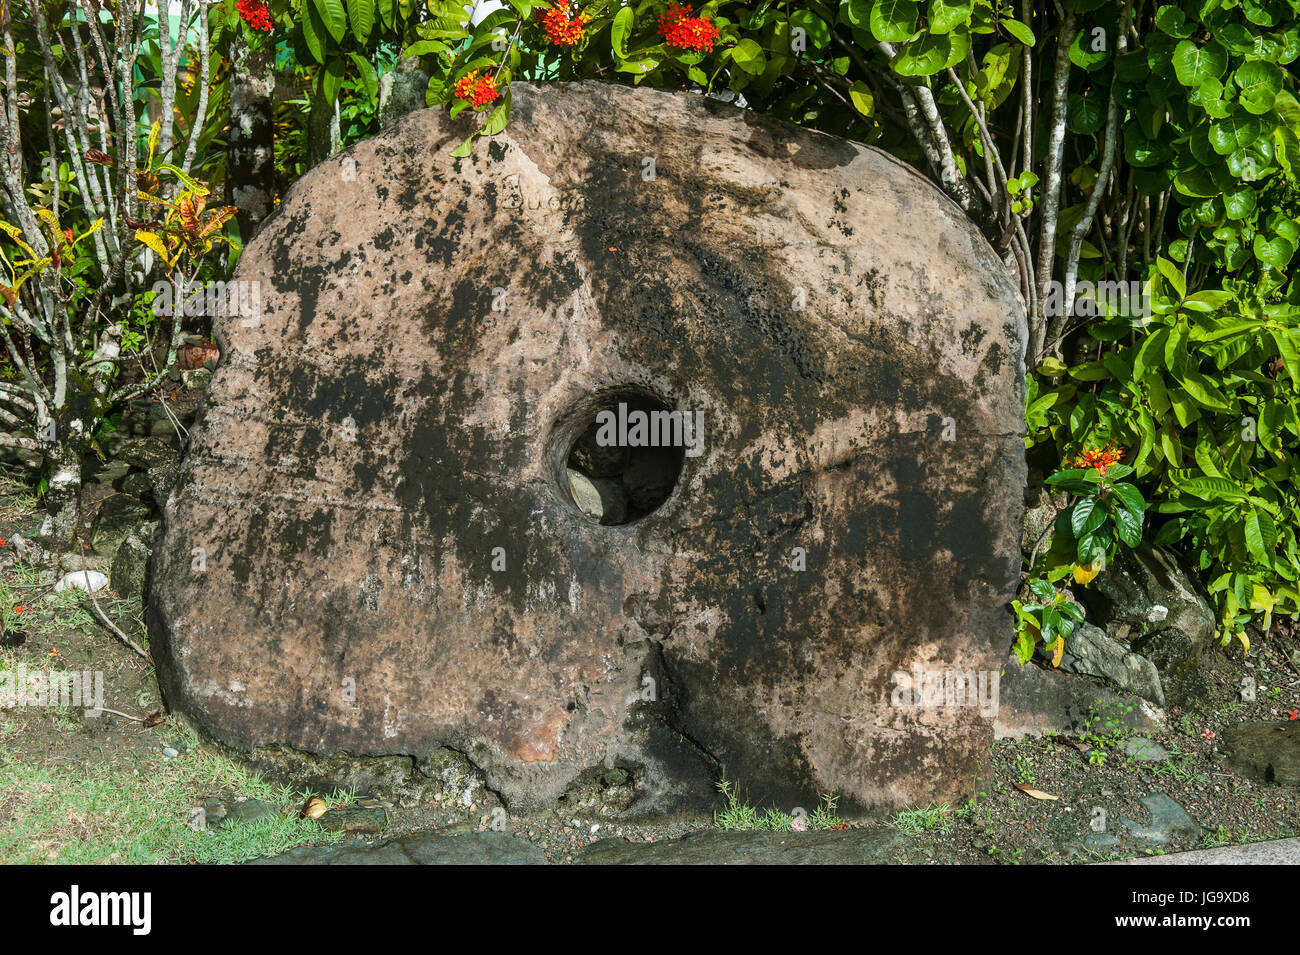 L'argent de pierre sur l'île de Yap, Micronésie Banque D'Images